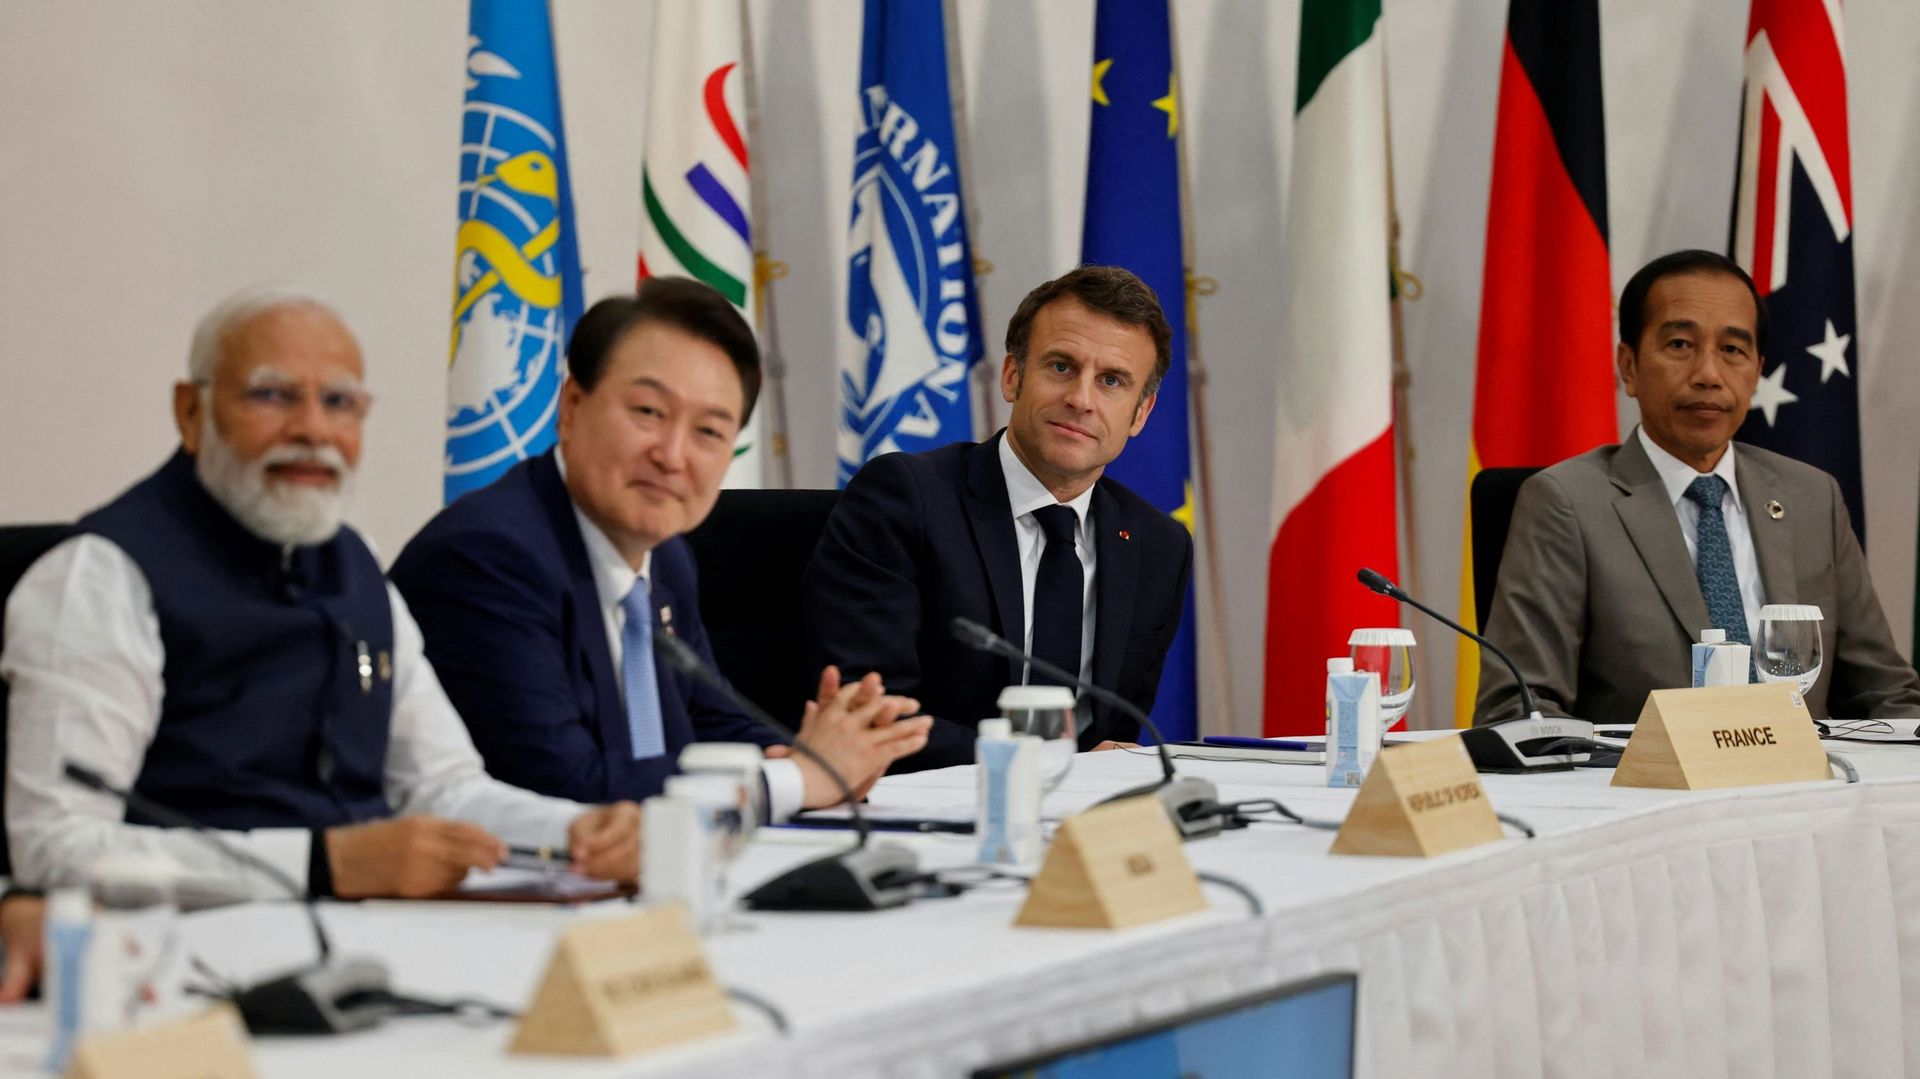 (De gauche à droite) Le Premier ministre indien Narendra Modi, le Sud-Coréen Yoon Suk Yeol, le président français Emmanuel Macron et le président indonésien Joko Widodo participent à une séance de travail dans le cadre du sommet des dirigeants du G7 à Hir